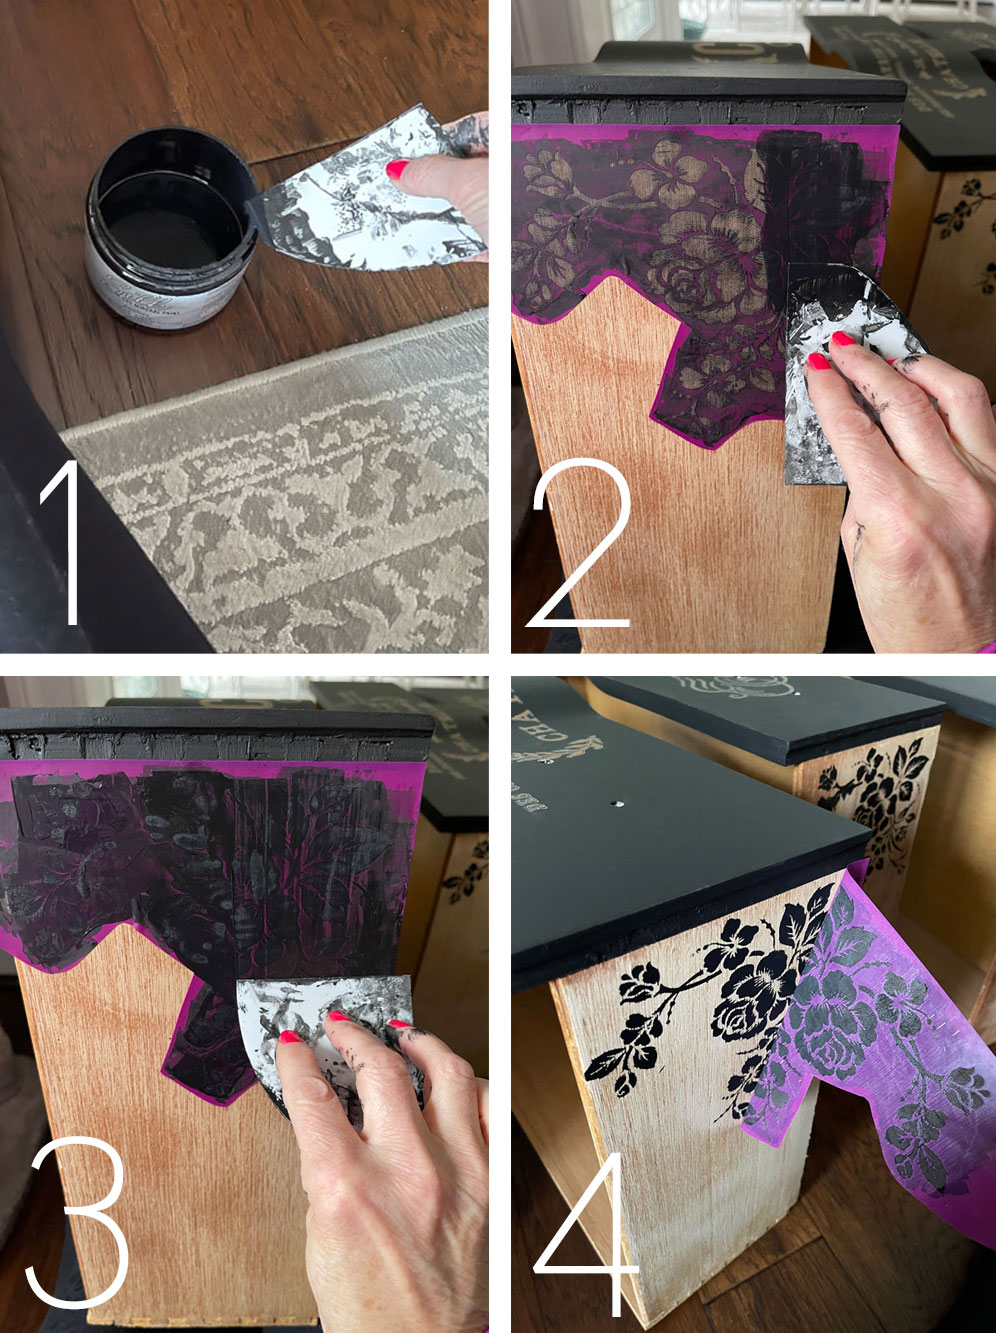 How to apply a silkscreen stencils